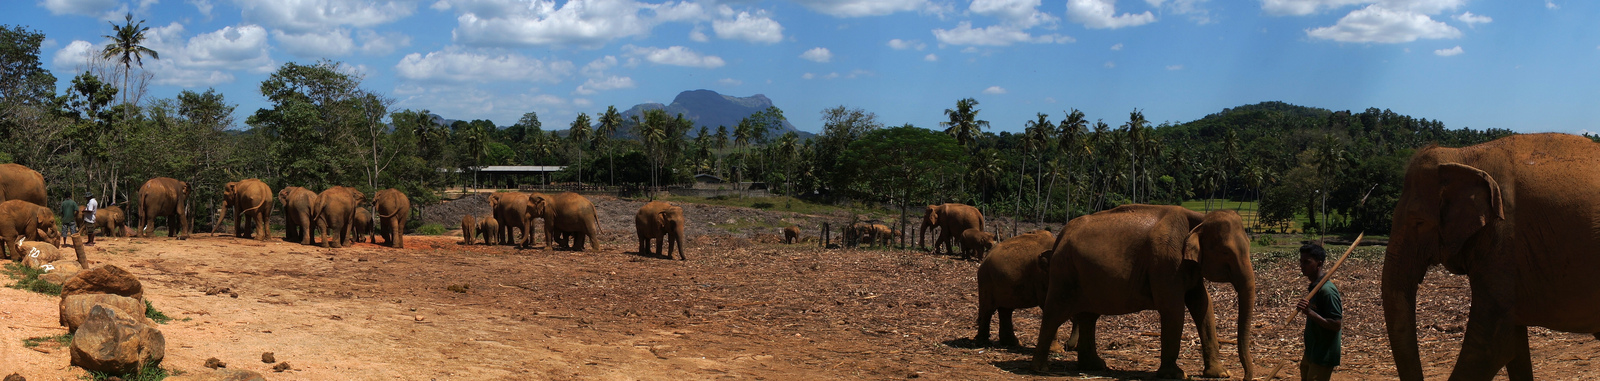 Pinnawela Elephant orphanage